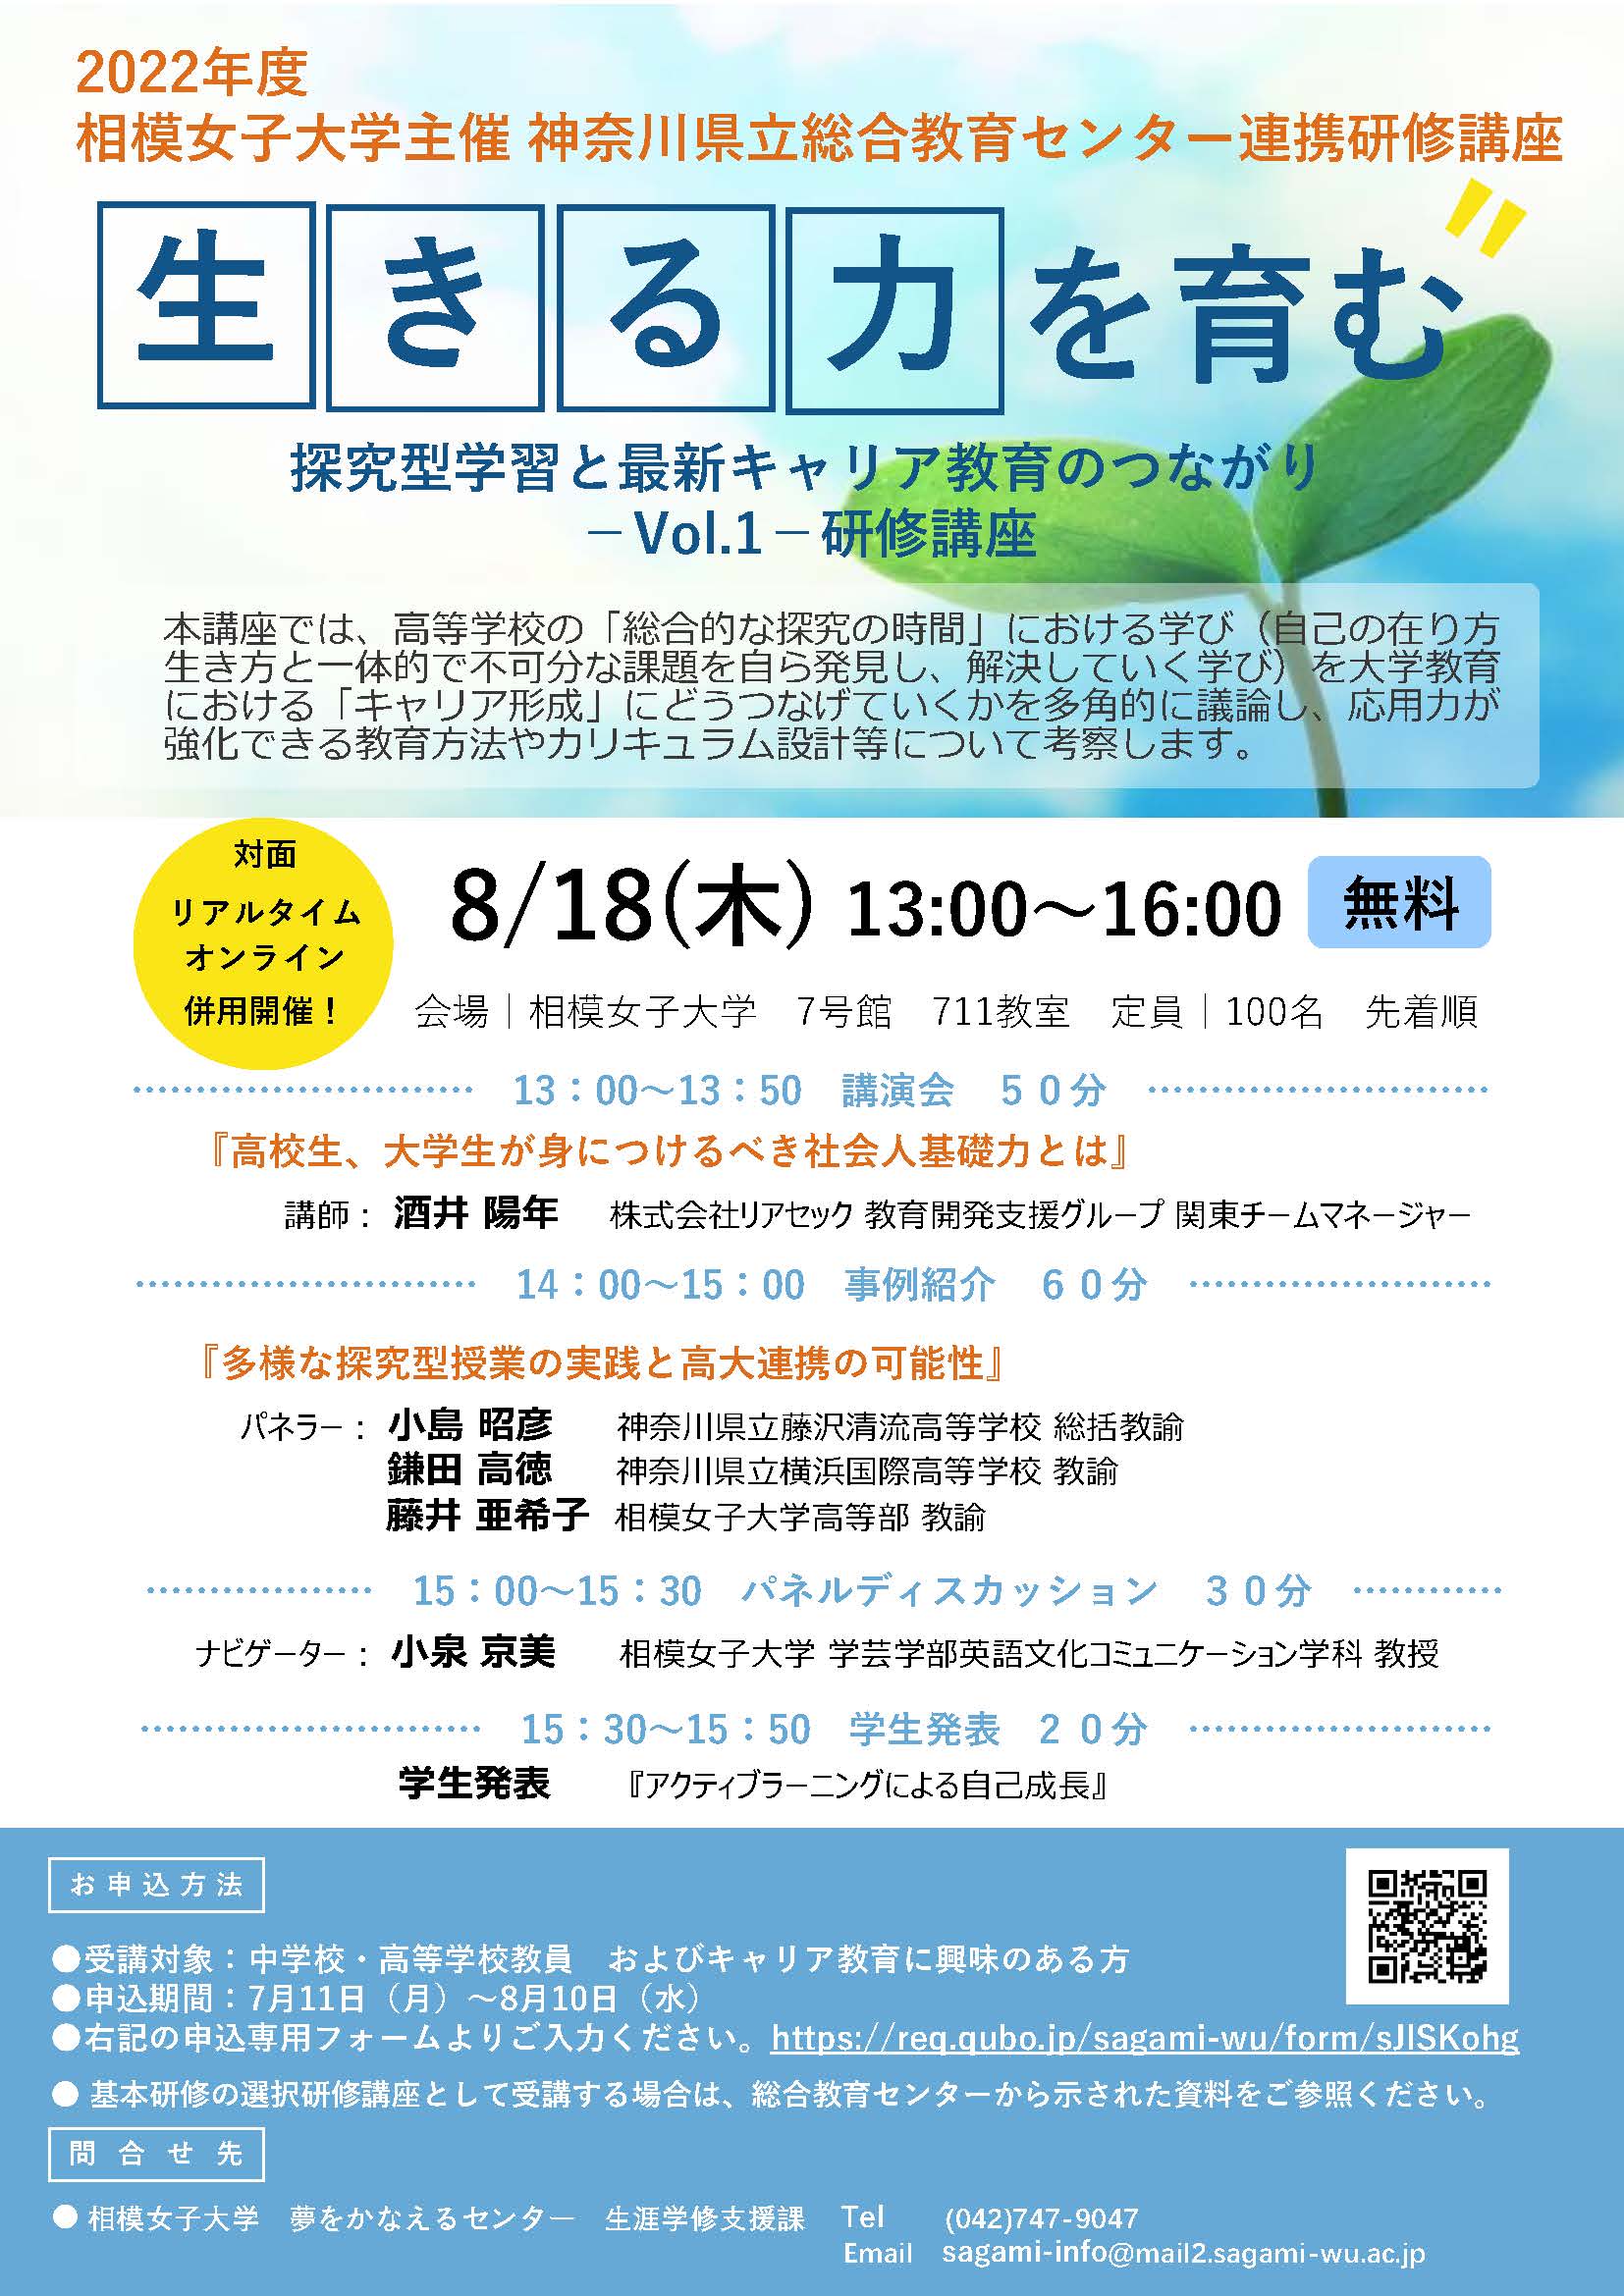 夢をかなえるセンター】生涯学習：神奈川県立総合教育センターとの連携